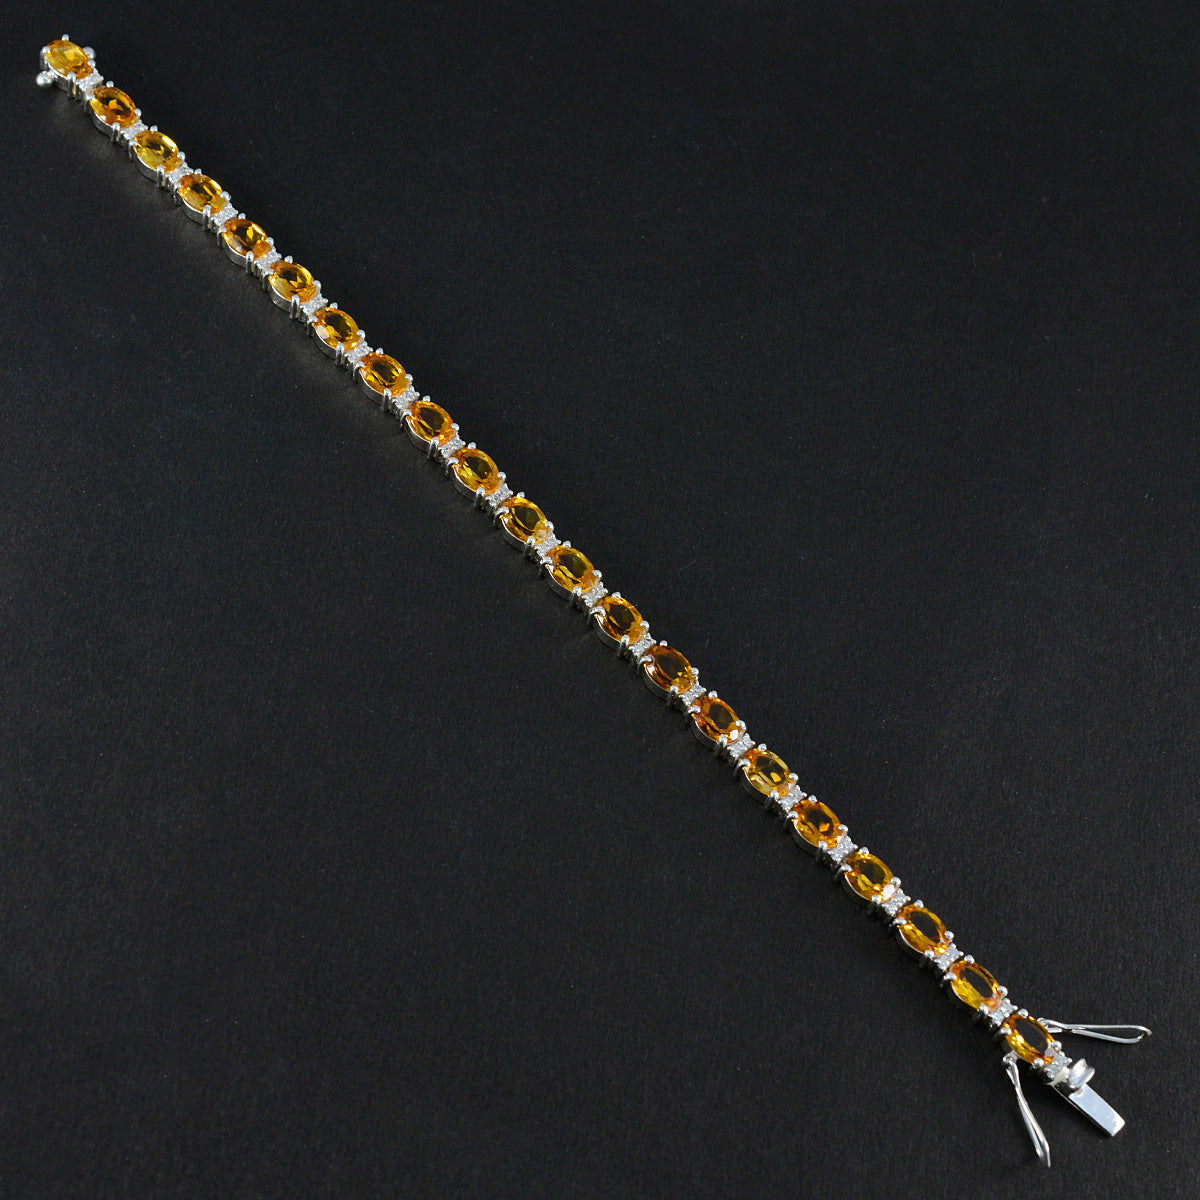 Riyo Custom 925 Sterling Silber Armband für Damen, Citrin-Armband, Krappenfassung-Armband mit Box, mit Zungen-Tennis-Armband, Größe L, 15,2–21,6 cm.